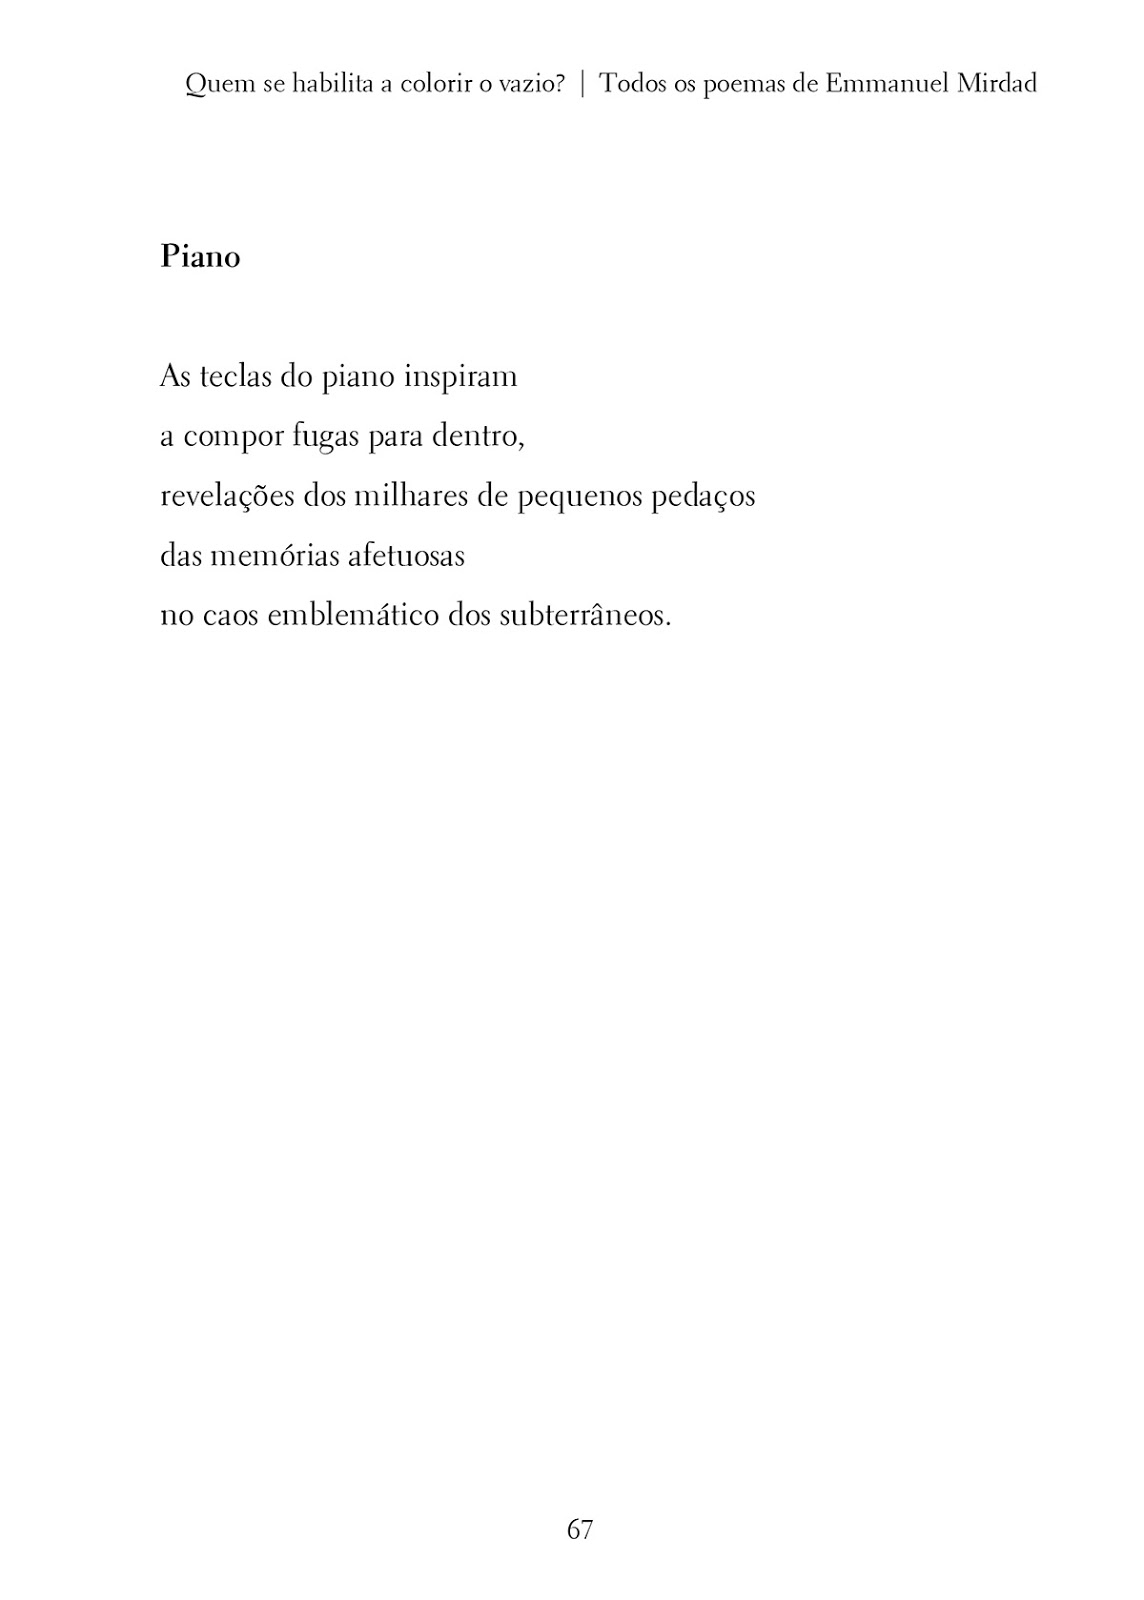 Precaución articulo lunes Poema “Piano”, de Emmanuel Mirdad